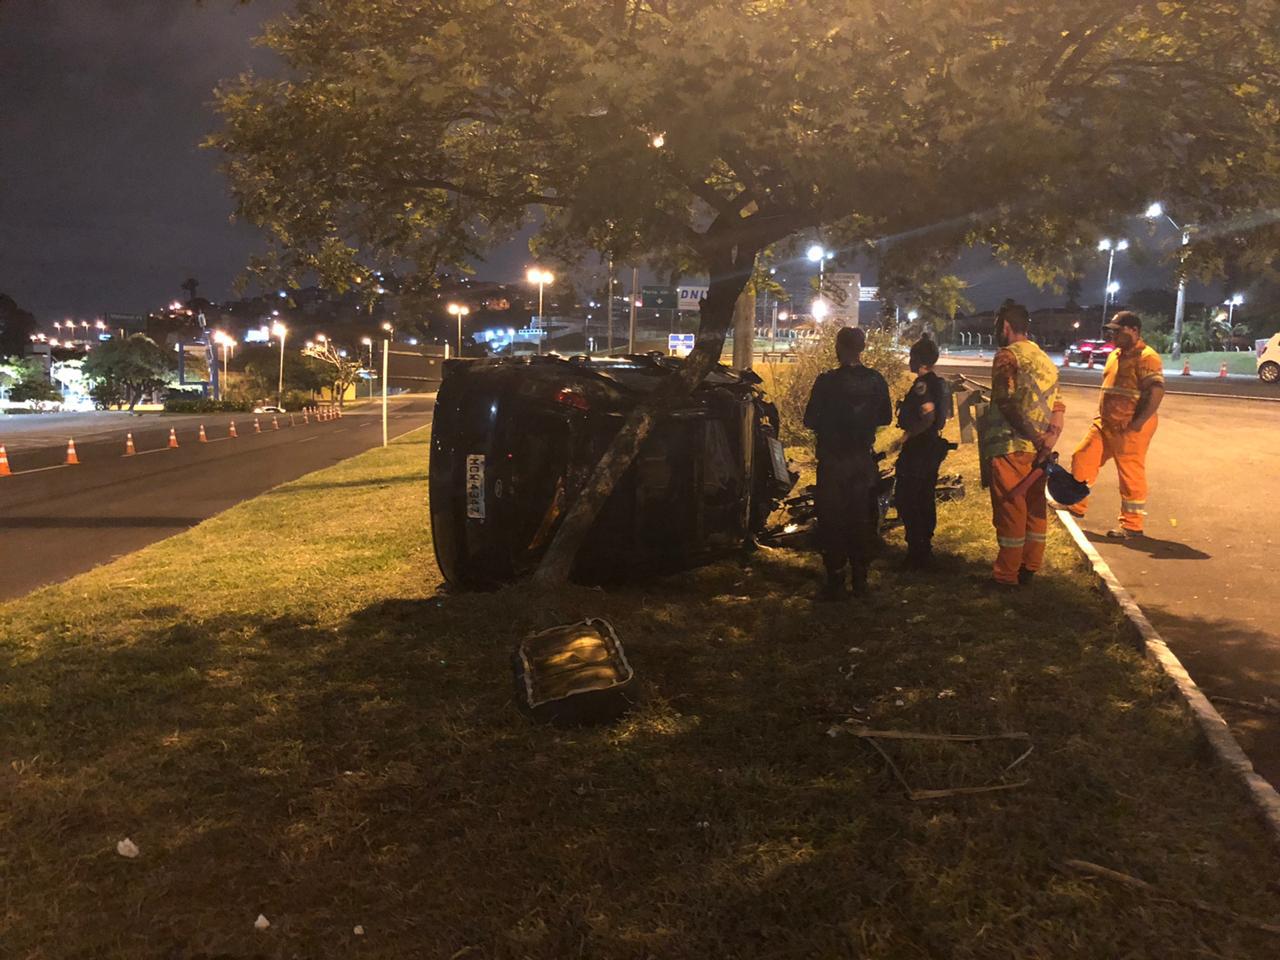 Apesar do impacto motorista não teve ferimentos | Foto GMF/Divulgação